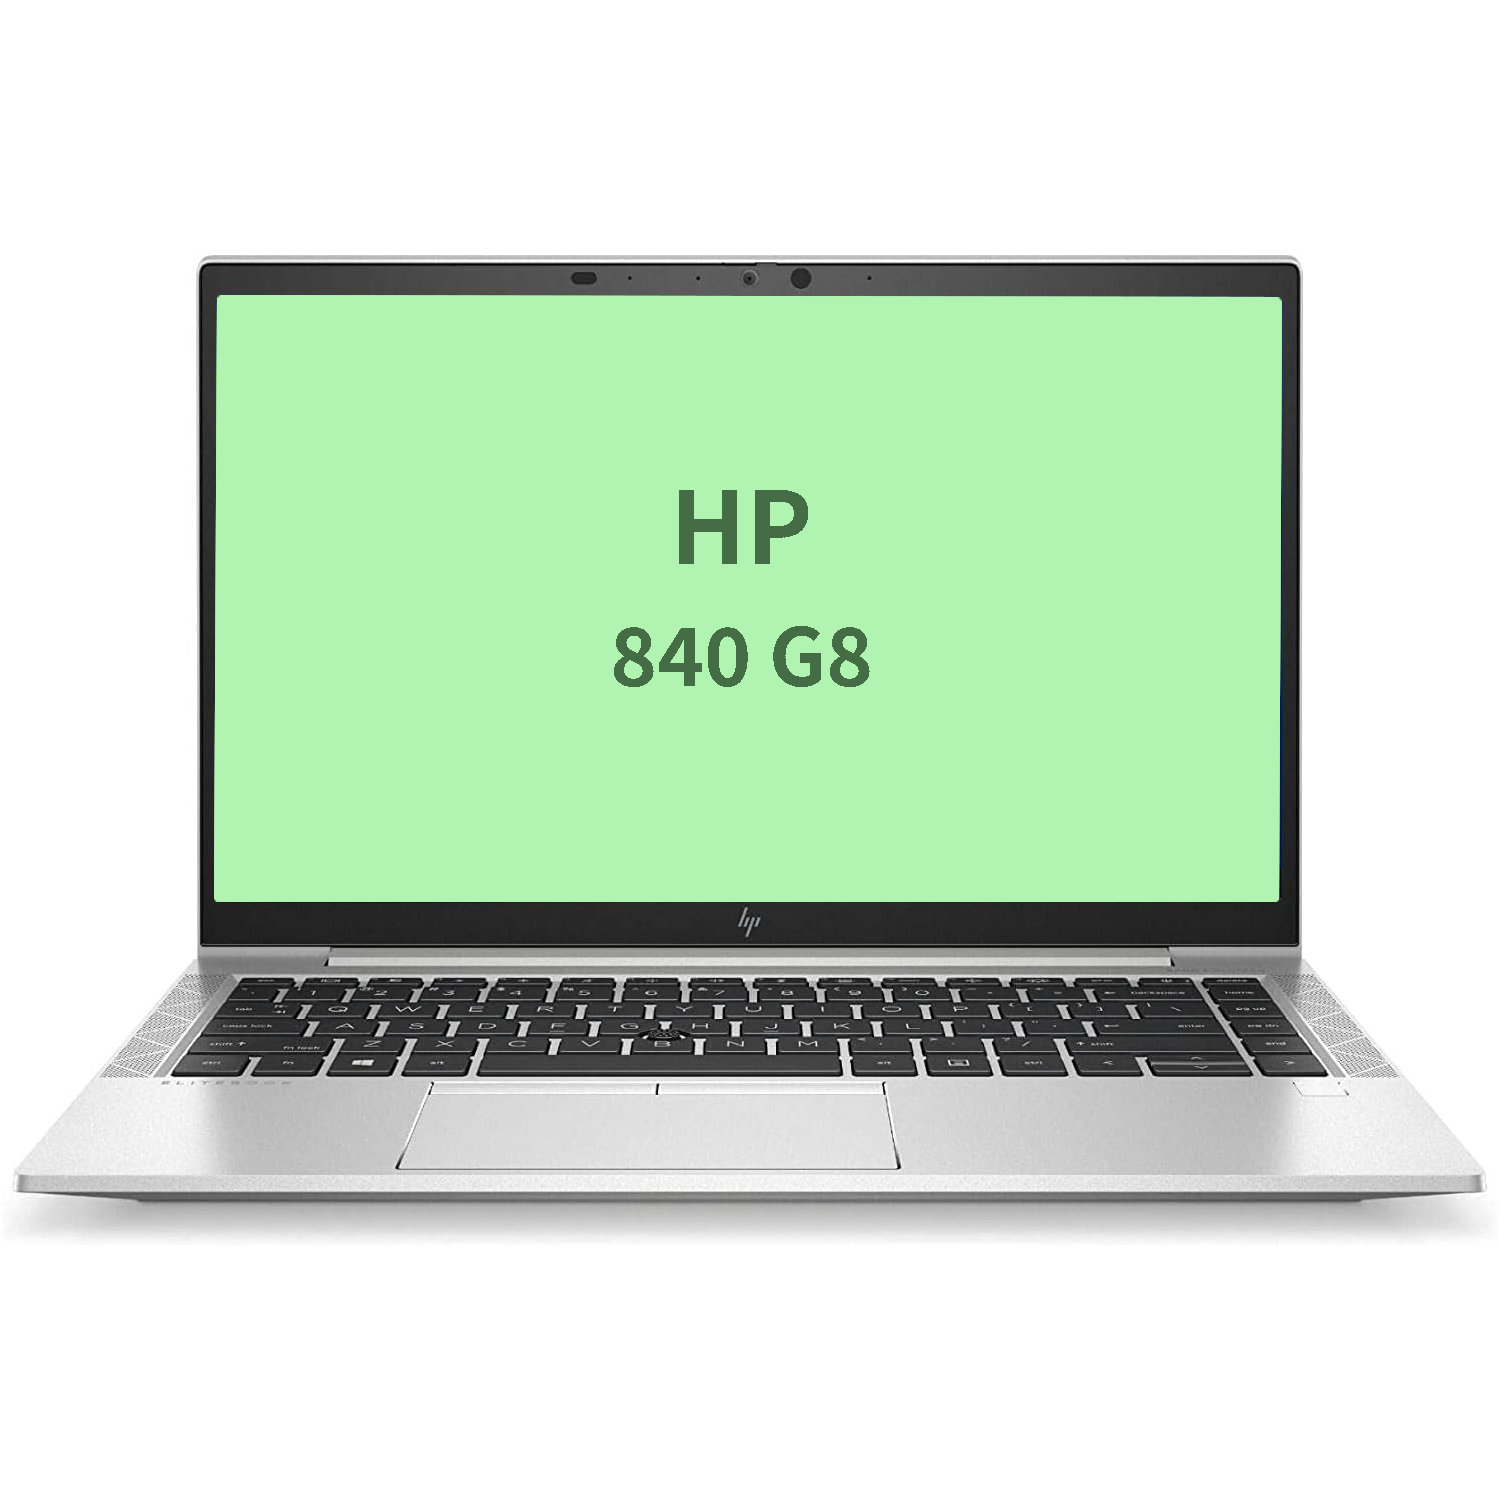 HP Elitebook 840 g8